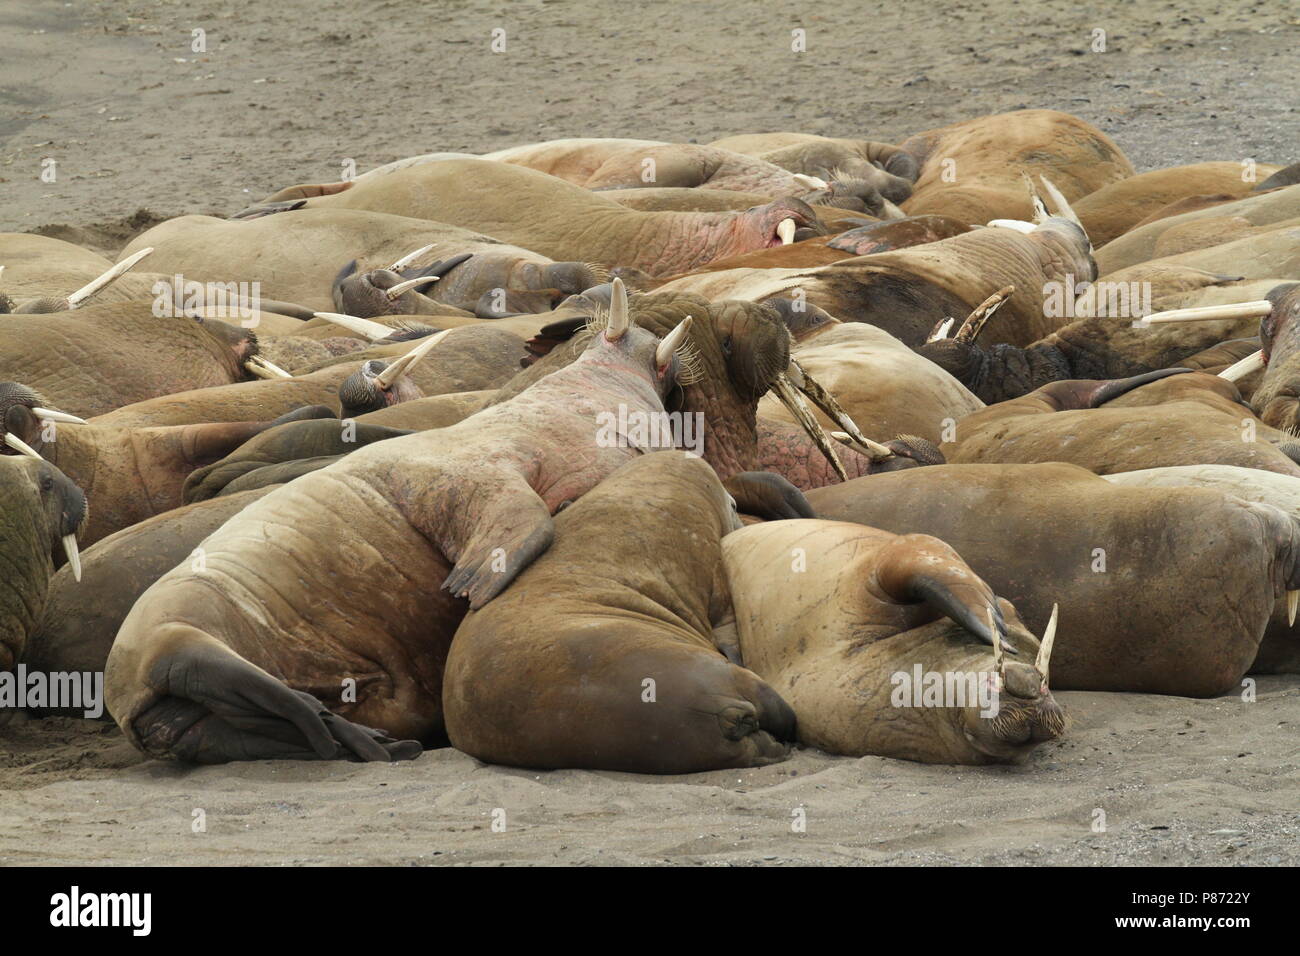 Groep Walrussen op de kust; Group of Walruss's on the shore Stock Photo